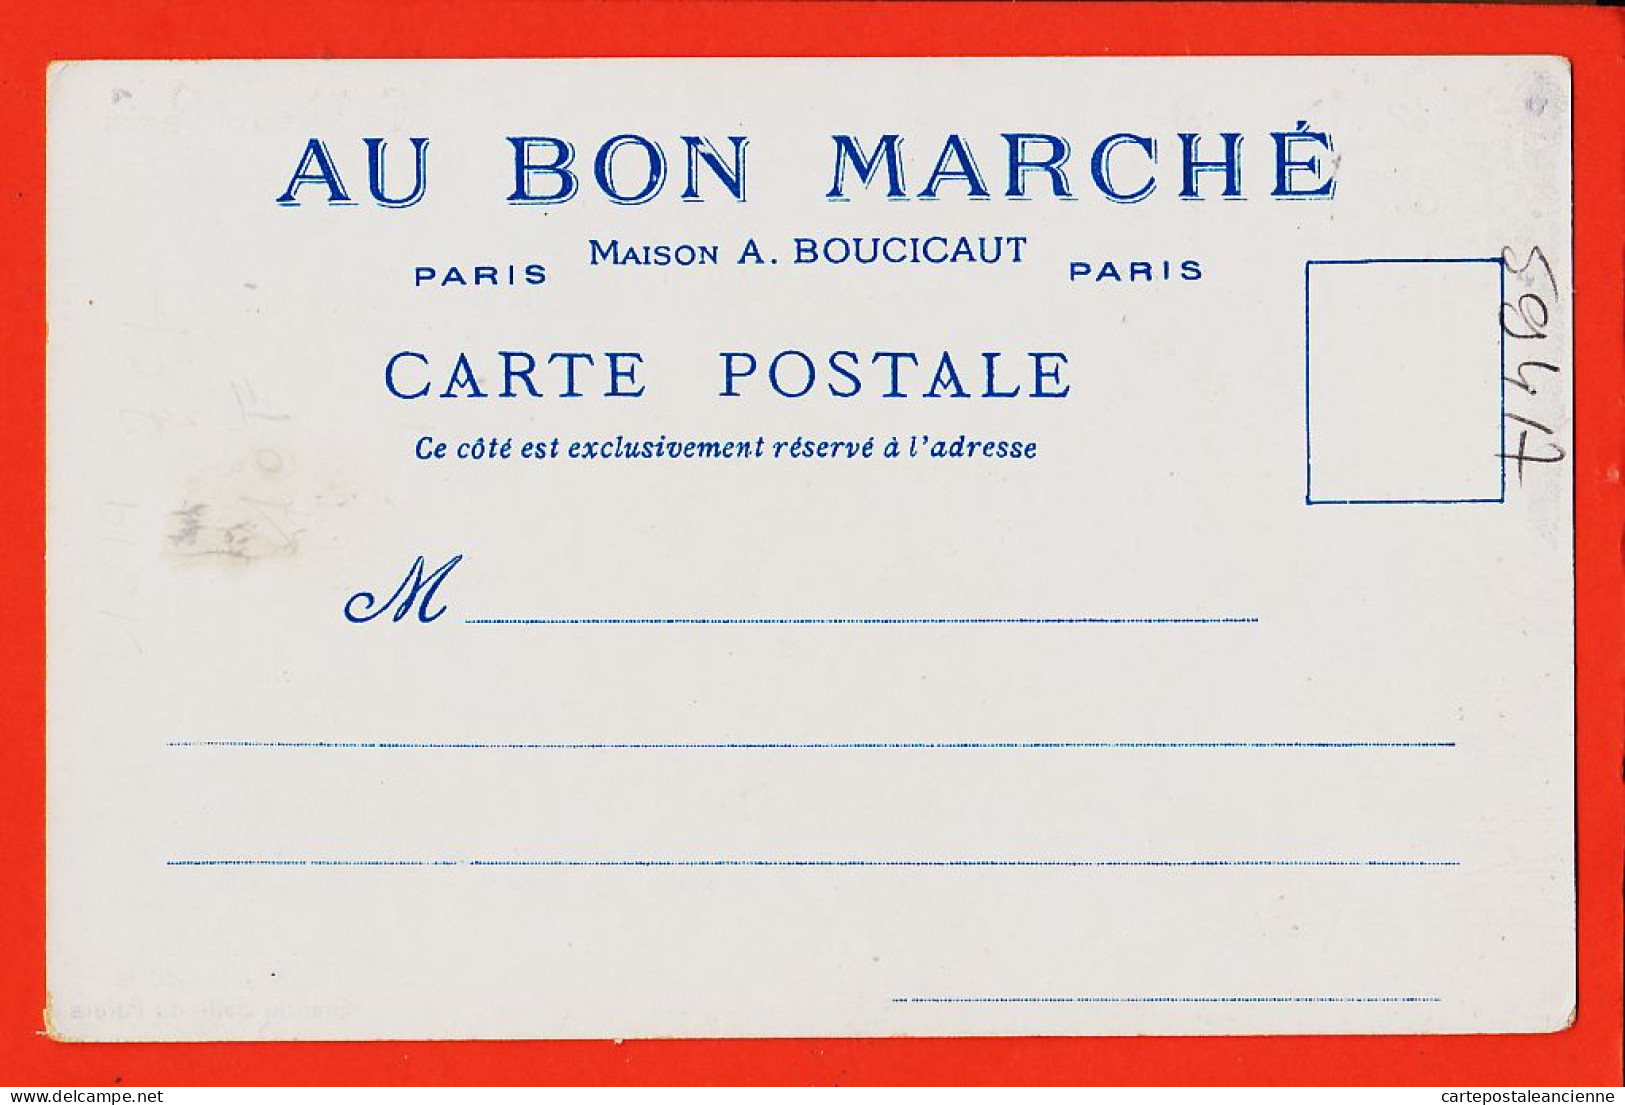 30791 / Le VIEUX PARIS Pignon Grande Salle PALAIS Offert Magasins BON MARCHE Maison BOUCICAUT Illustration ROBIDA 1900s - Robida